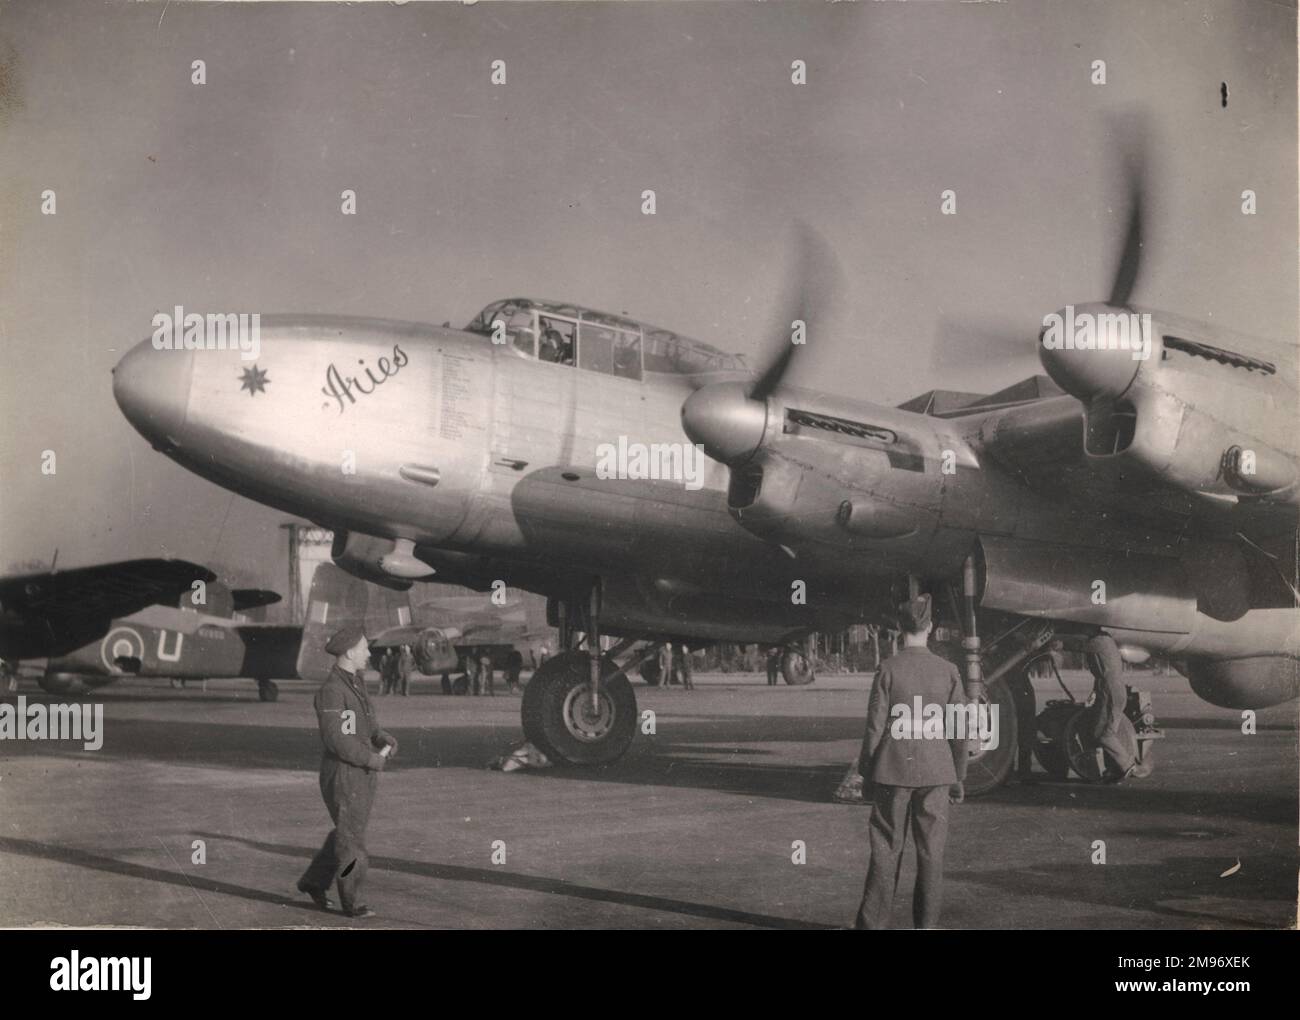 Avro Lancaster i ‘Aries’, PD328 anni, della Empire Air Navigation School di Shawbury, che si scalda prima del suo volo record da Inghilterra a Città del Capo del 32hrs 21min. Questo aeromobile aveva sezioni di naso e coda Lancastrian, carro Lincoln e serbatoi di carburante extra nella baia di naso e bomba. Ha anche portato i più recenti ausili alla navigazione. Dopo una serie di voli a lungo raggio tra il 1944 e il 1947 e che coprono 200.000 miglia, l'aeromobile è stato ritirato. Foto Stock